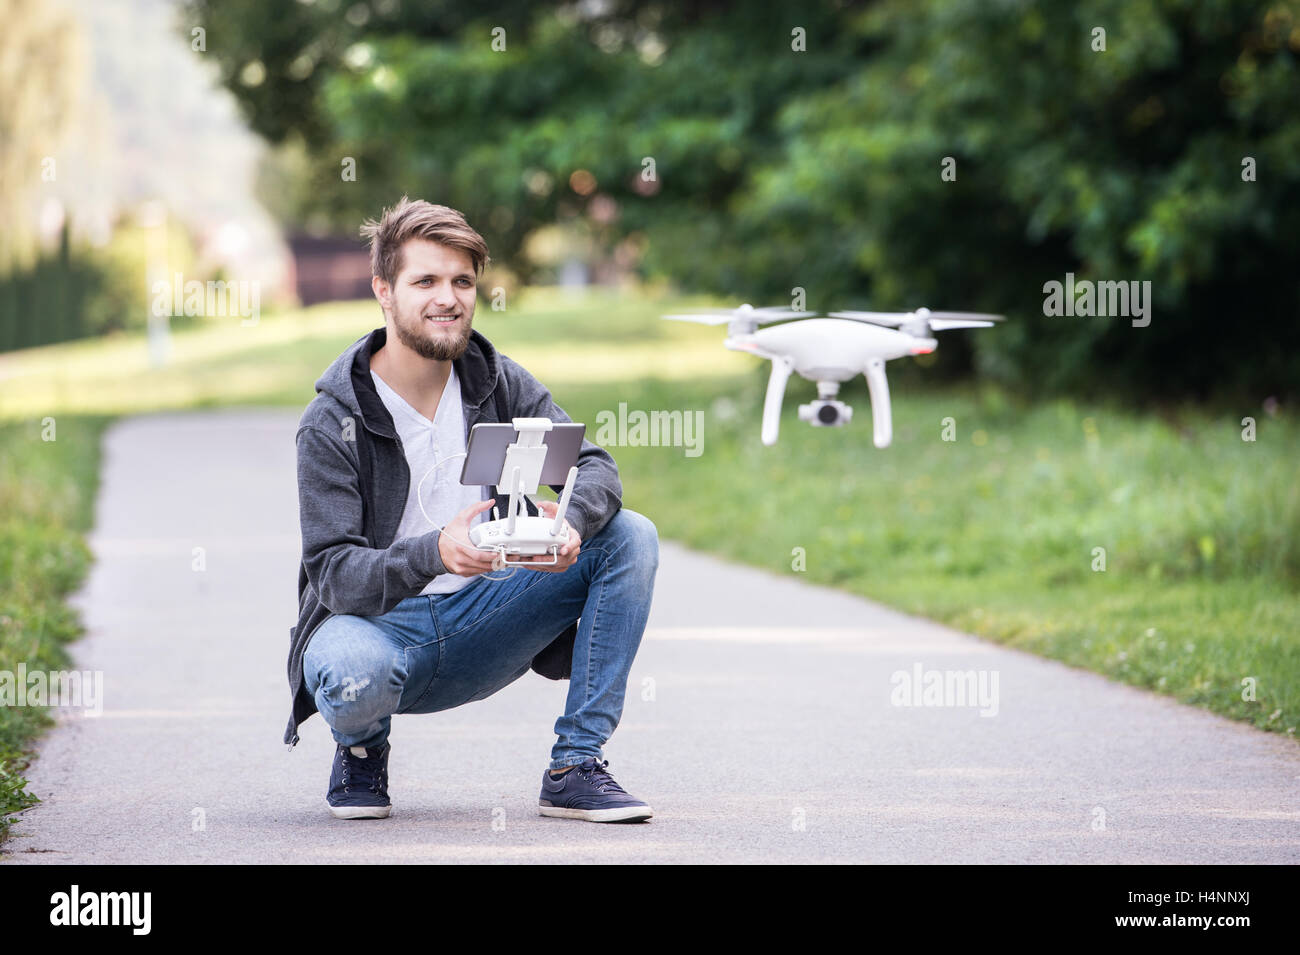 Giovane uomo tanga con battenti drone. Soleggiato verde natura. Foto Stock